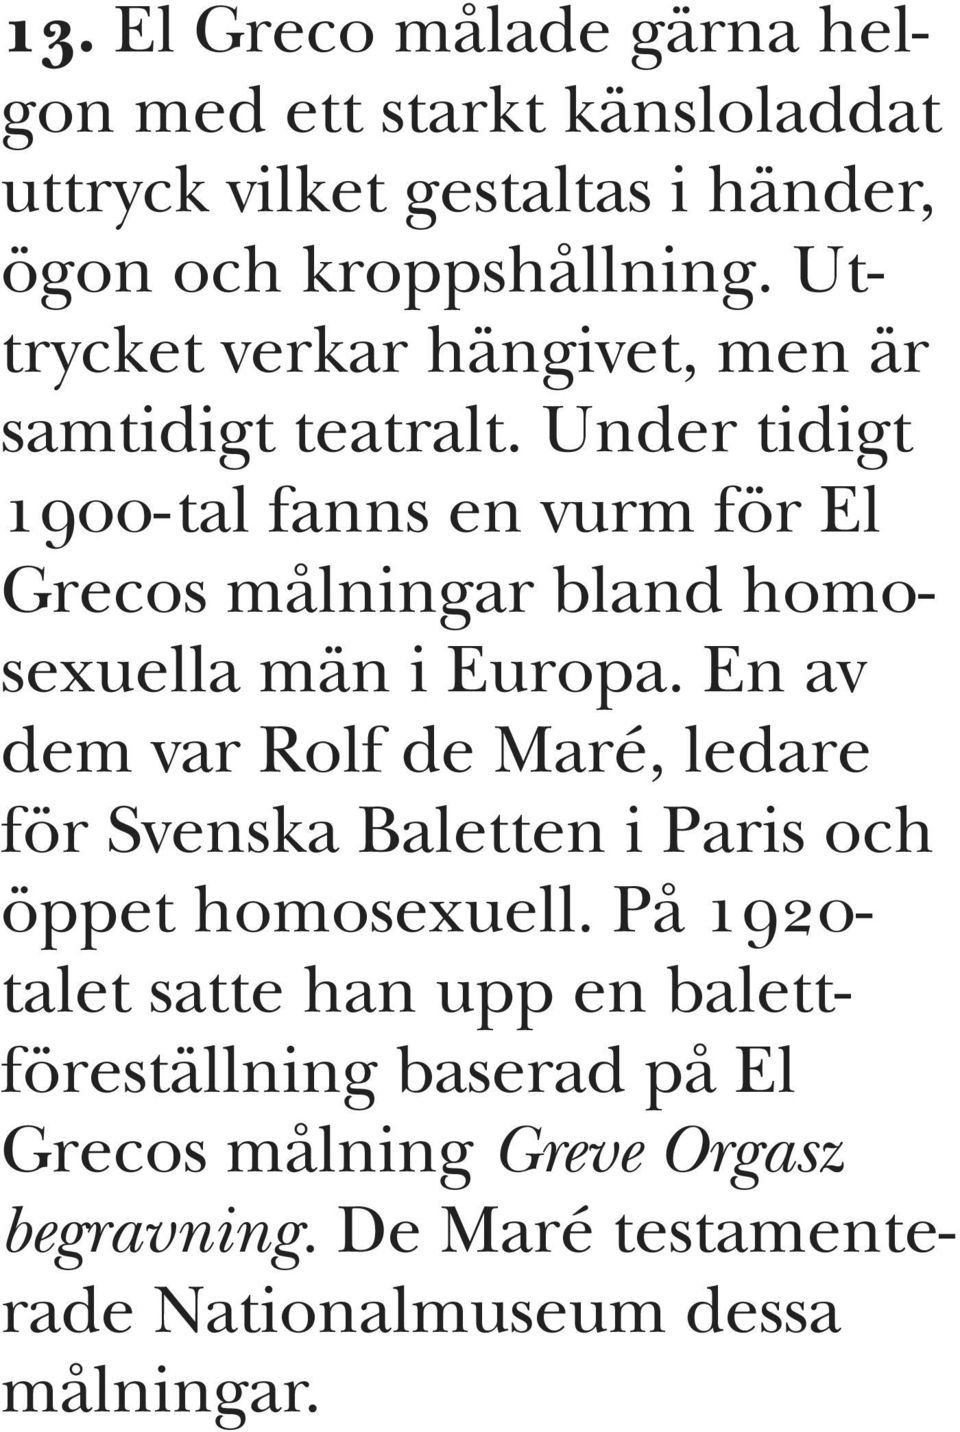 Under tidigt NVMMJtal fanns en vurm för El Grecos målningar bland homosexuella män i Europa.